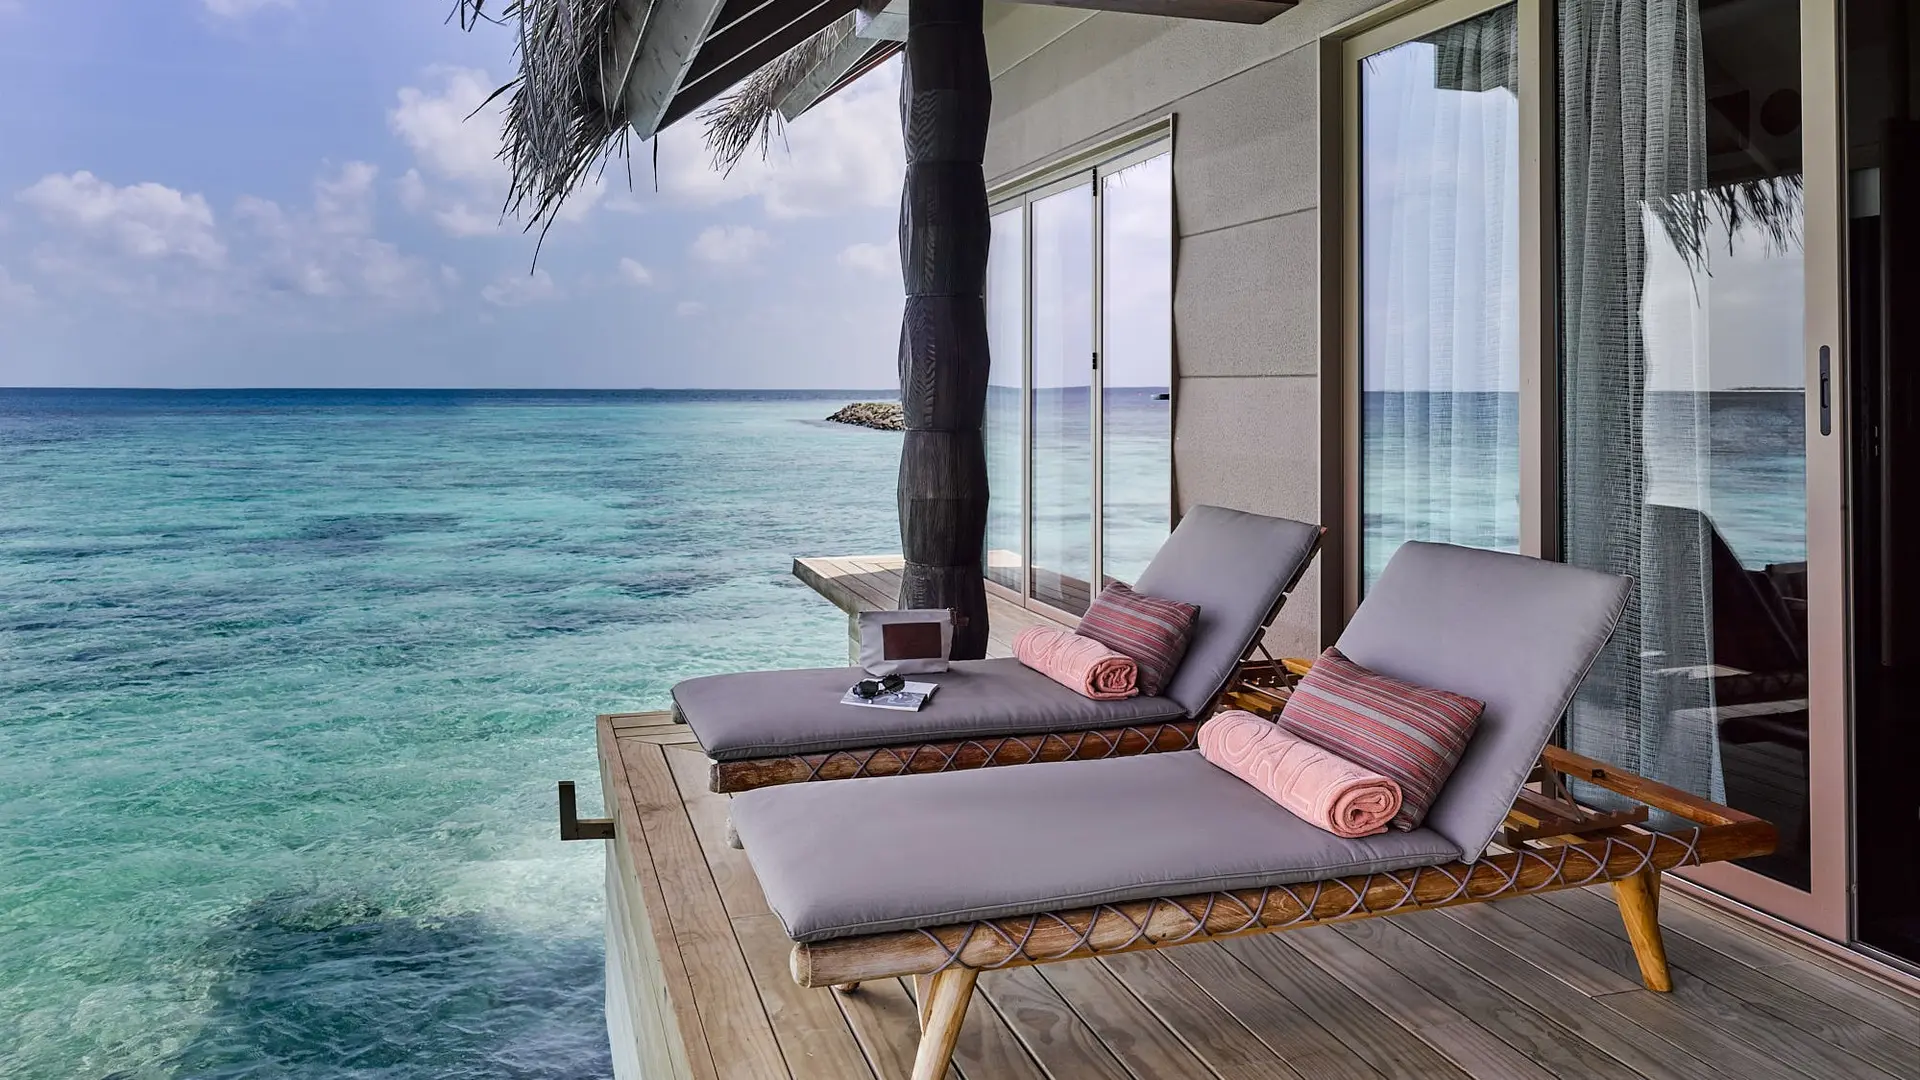 Hotel review Service & Facilities' - JOALI Maldives - 4